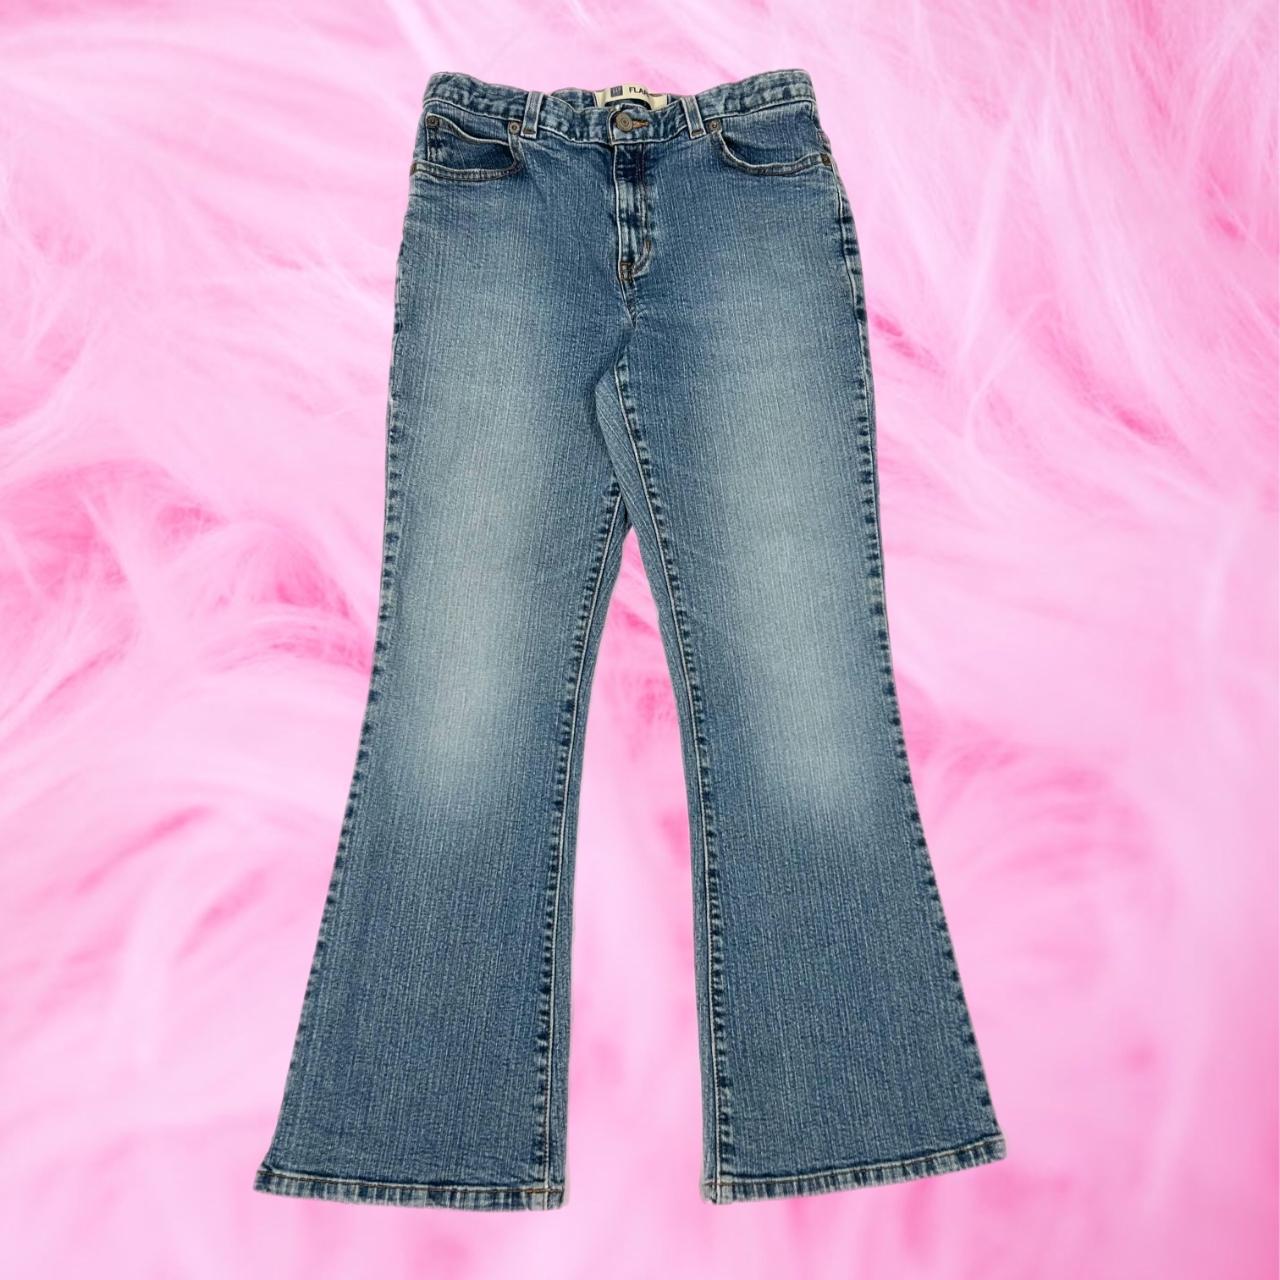 Vintage GAP ultra low rise flare jeans • Women's... - Depop